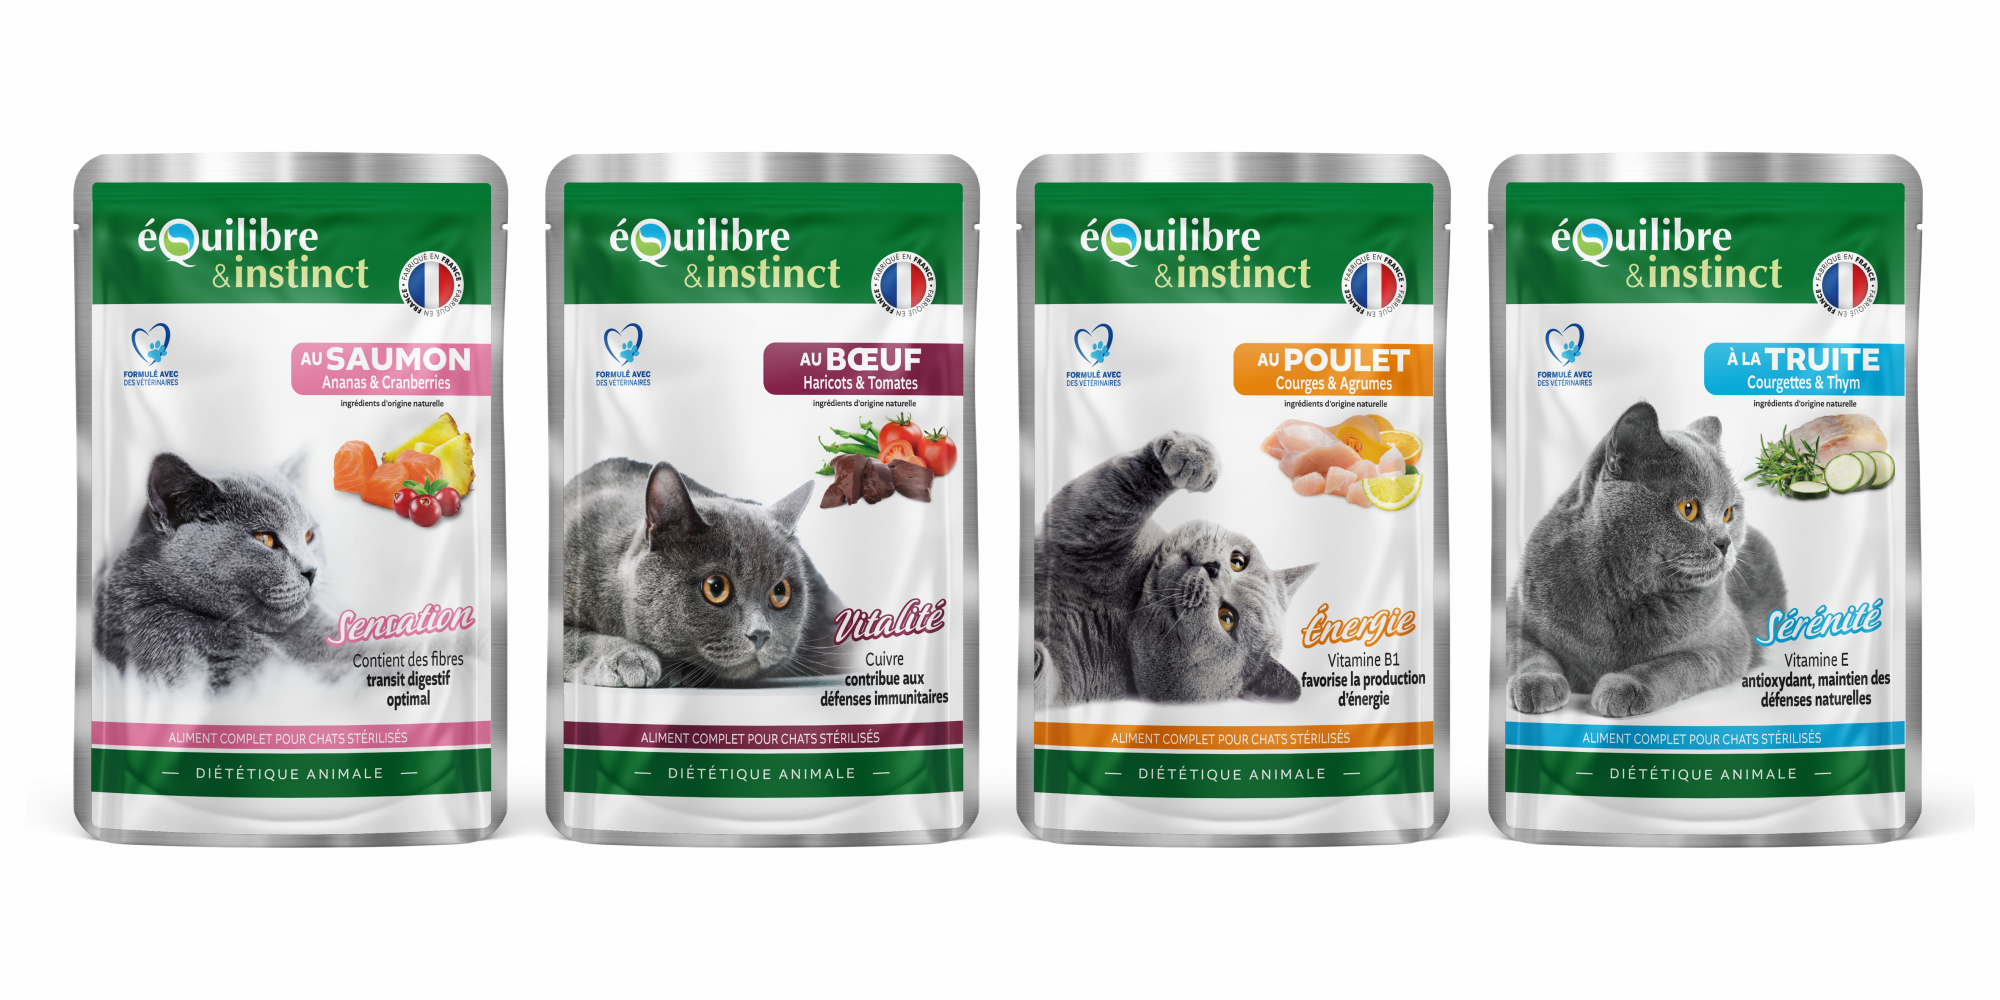 Equilibre & Instinct - Multipack 4 variedades de ração húmida para gatos esterilizados